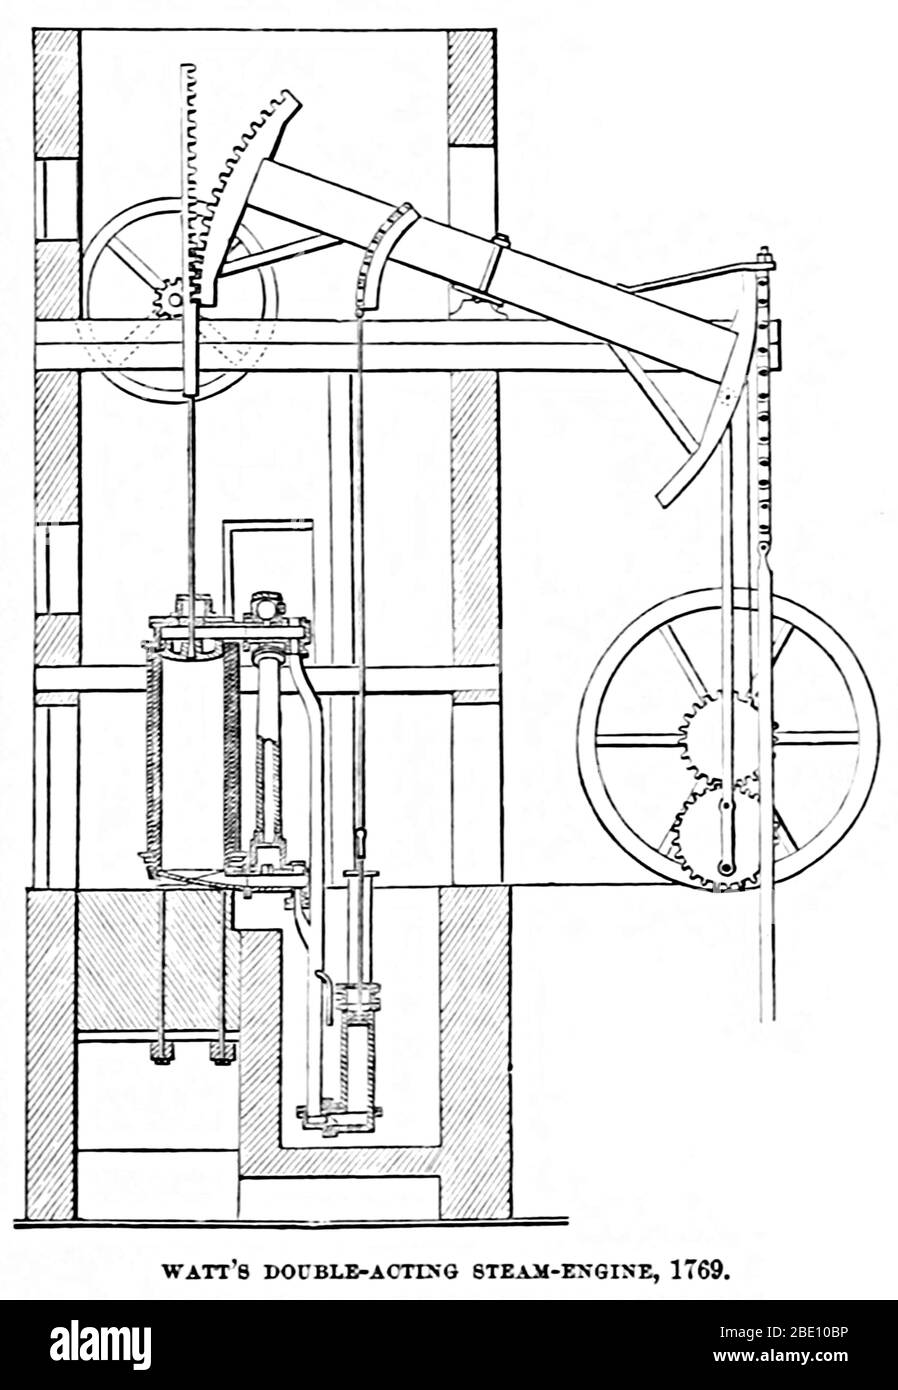 Watts Doppeltwirkender Dampfmotor. Die Watt-Dampfmaschine (alternativ auch als Boulton- und Watt-Dampfmaschine bekannt) war die erste Art von Dampfmaschine, die Dampf bei einem Druck knapp über der Atmosphäre ausübte, um den Kolben zu treiben, der durch ein Teilvakuum unterstützt wurde. Die von 1763 bis 1775 sporadisch entwickelte Watt-Dampfmaschine, die sich im Design der 1712 Newcomen-Maschine verbesserte, war der nächste große Schritt in der Entwicklung der Dampfmaschine. Watt's zwei wichtigsten Verbesserungen waren die separaten Kondensator und Drehbewegung. Illustration aus EINER Rezension des amerikanischen Fortschritts von Theodore Dwight Woolsey, Stockfoto